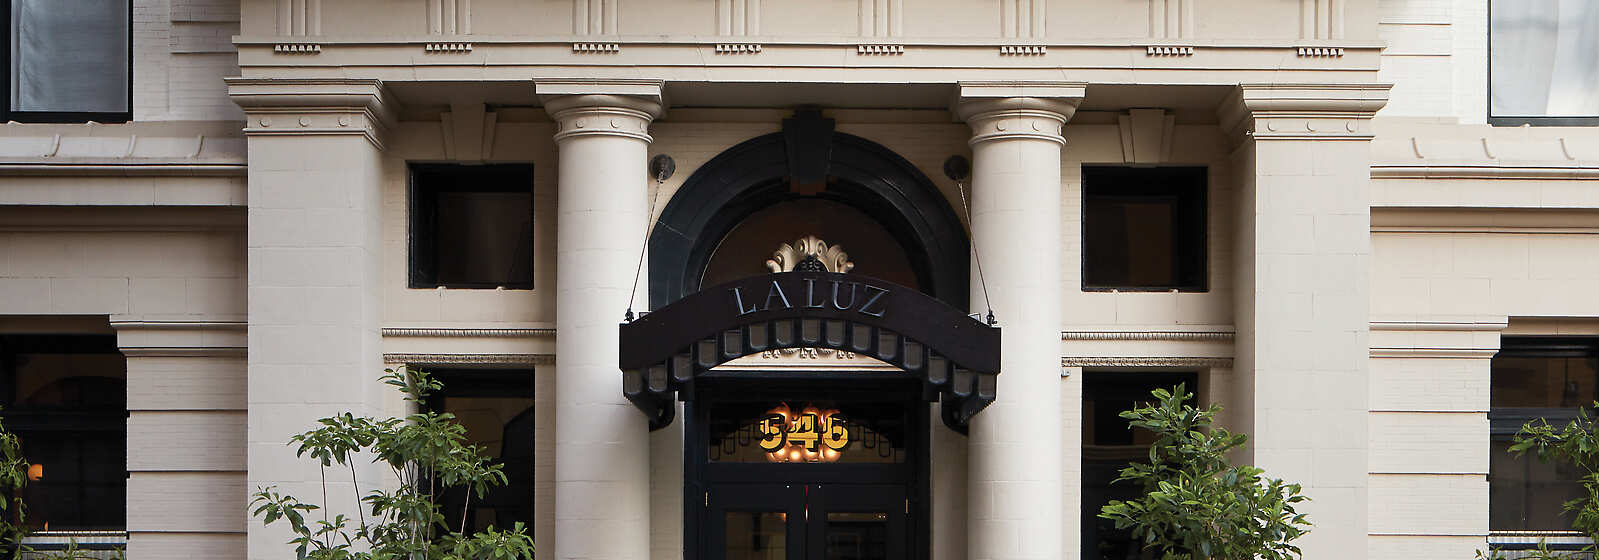 Maison de la Luz Hotel Entrance.